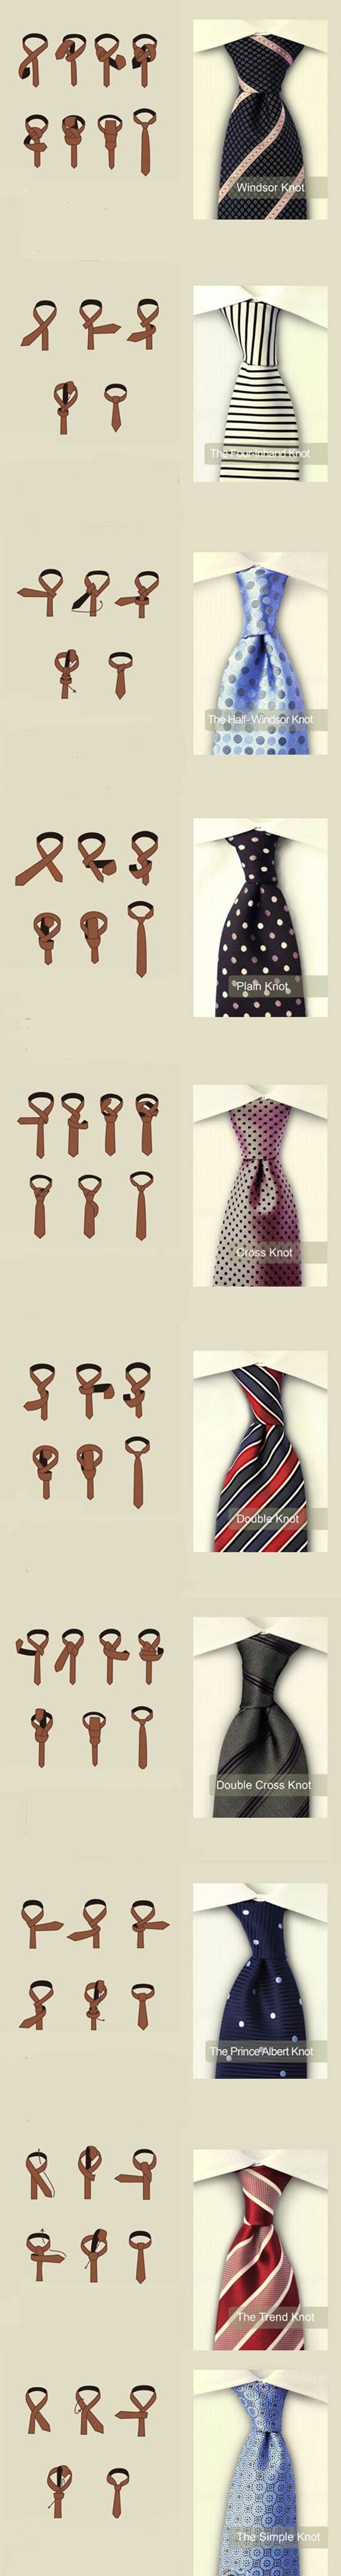 10 Ways to Tie a Tie 2